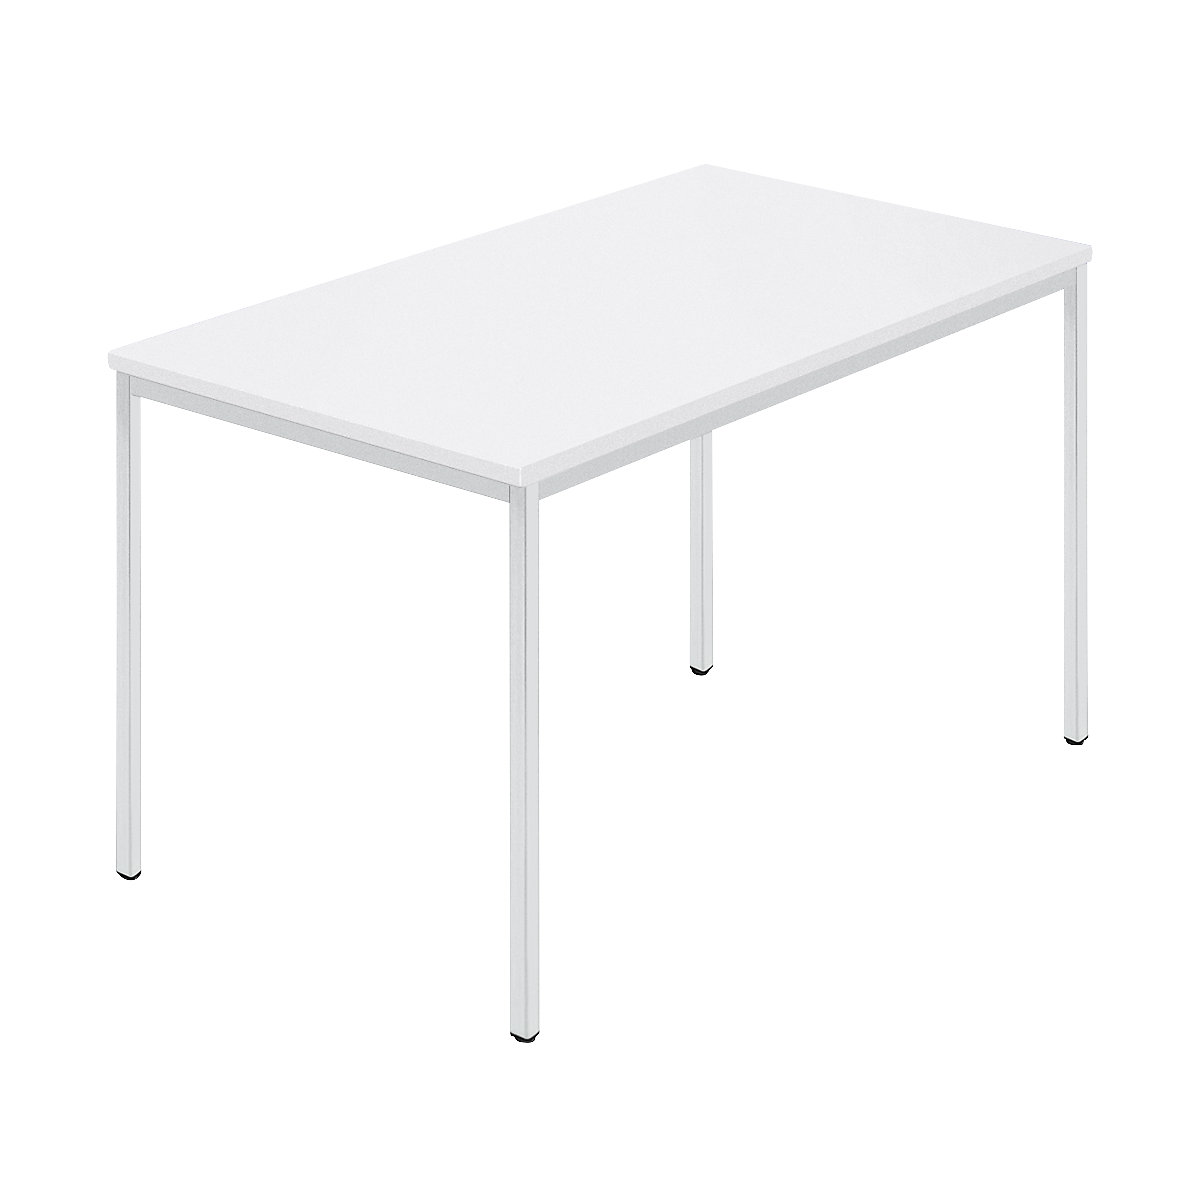 Rechthoekige tafel, vierkante buis met coating, b x d = 1200 x 800 mm, wit / grijs-6